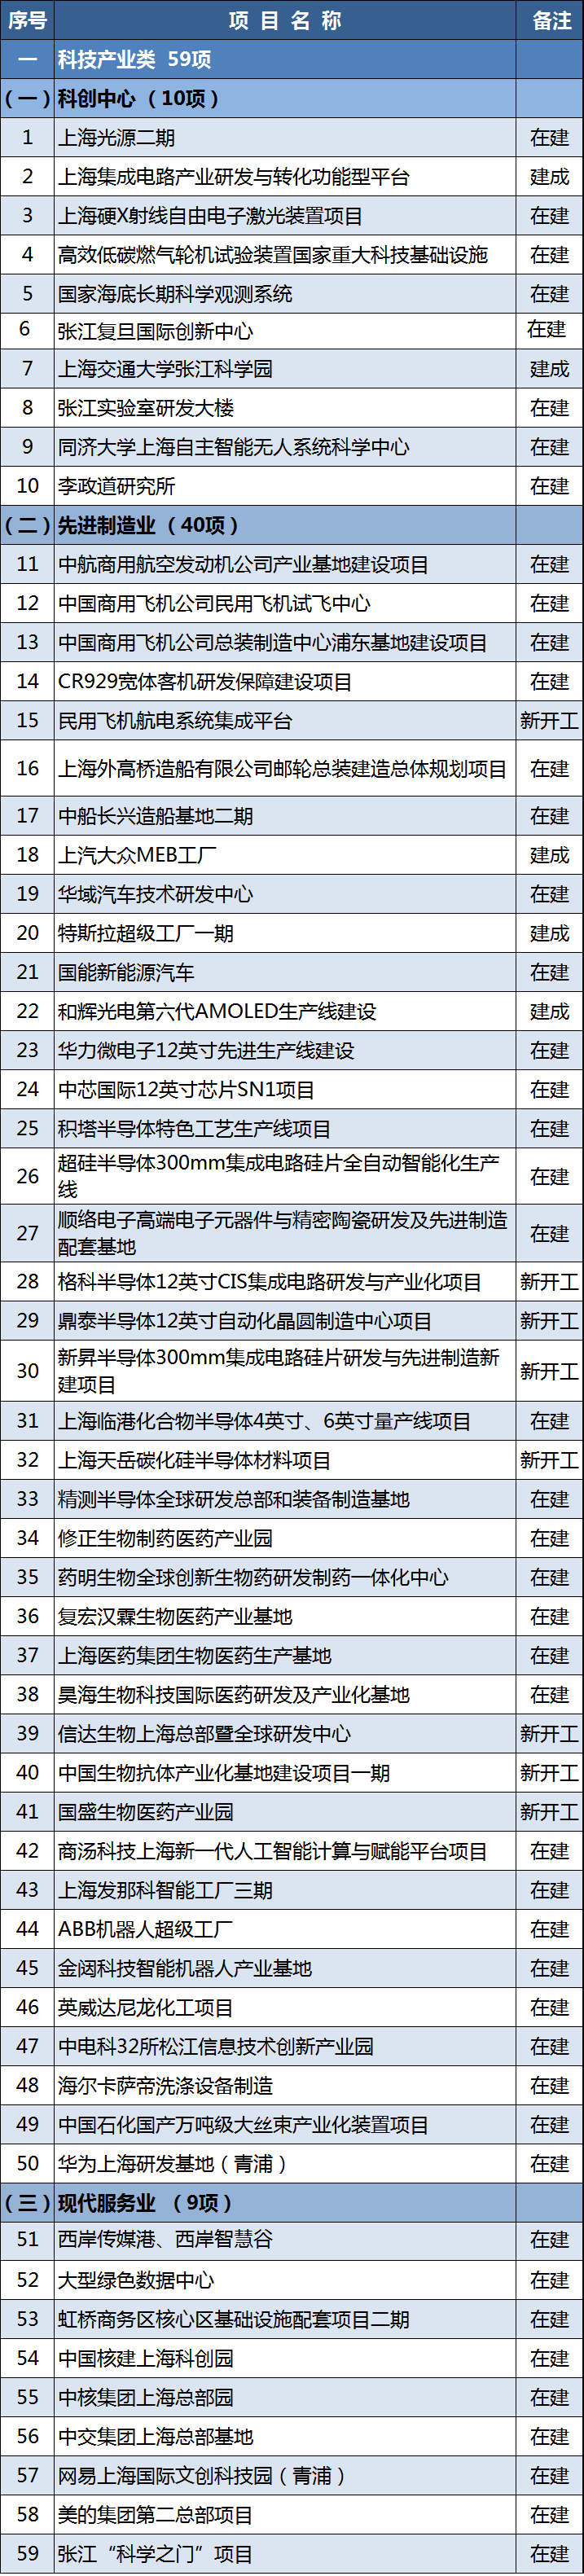 上海2021年重大项目清单  来源：上海发布